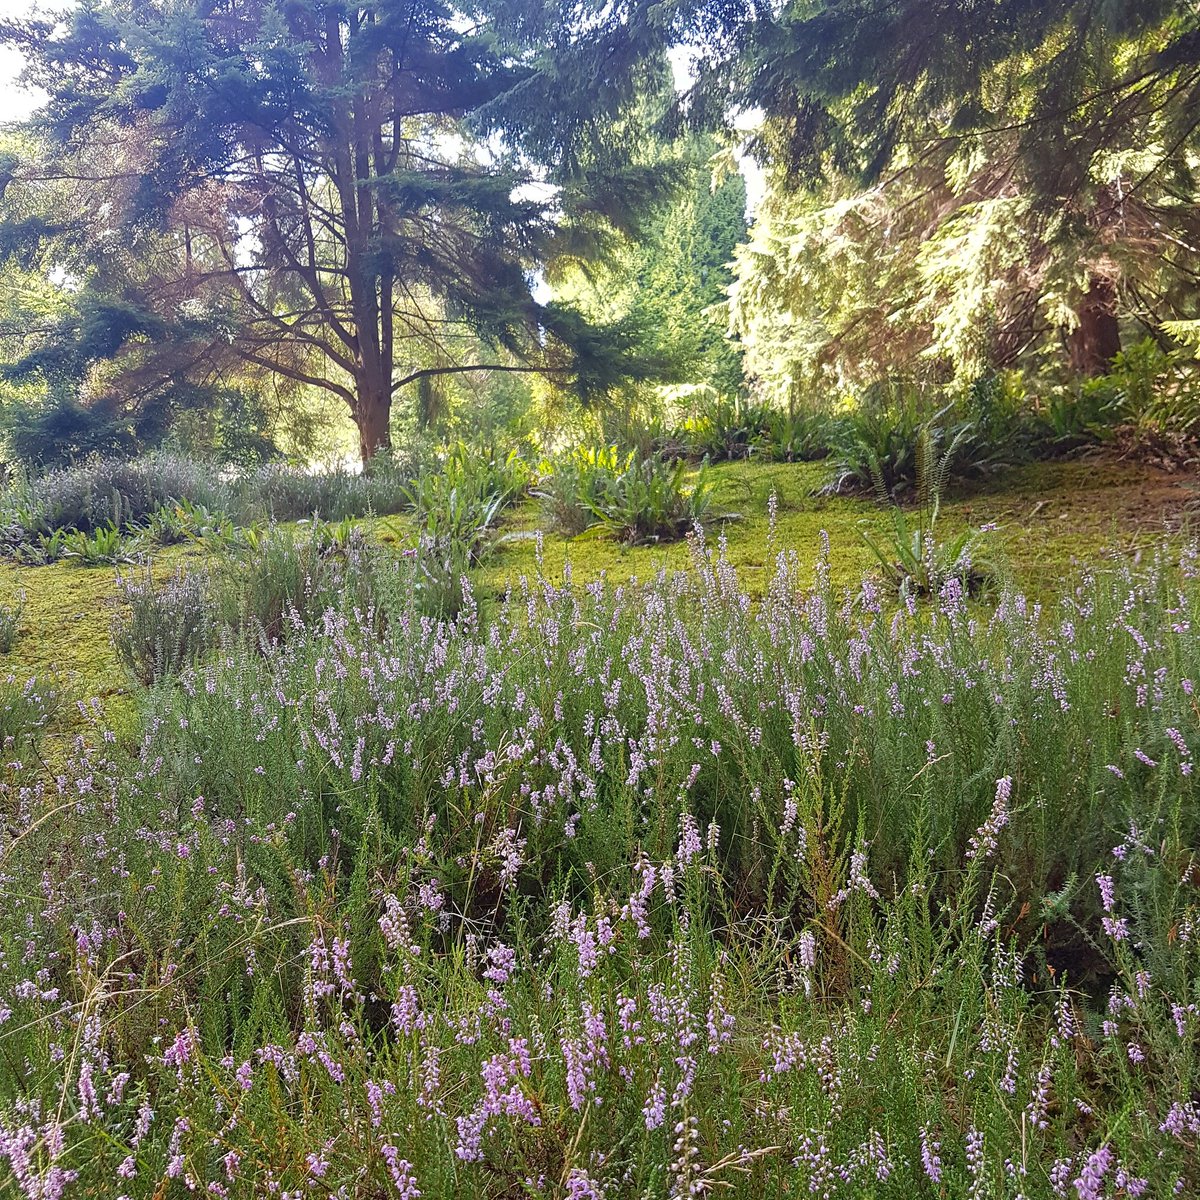 Fairy wonderland

#bedgeburyforest #purpleflowers #purpleheather #forest #woods #woodland #woodspirits #fairyforest #britishwoodland